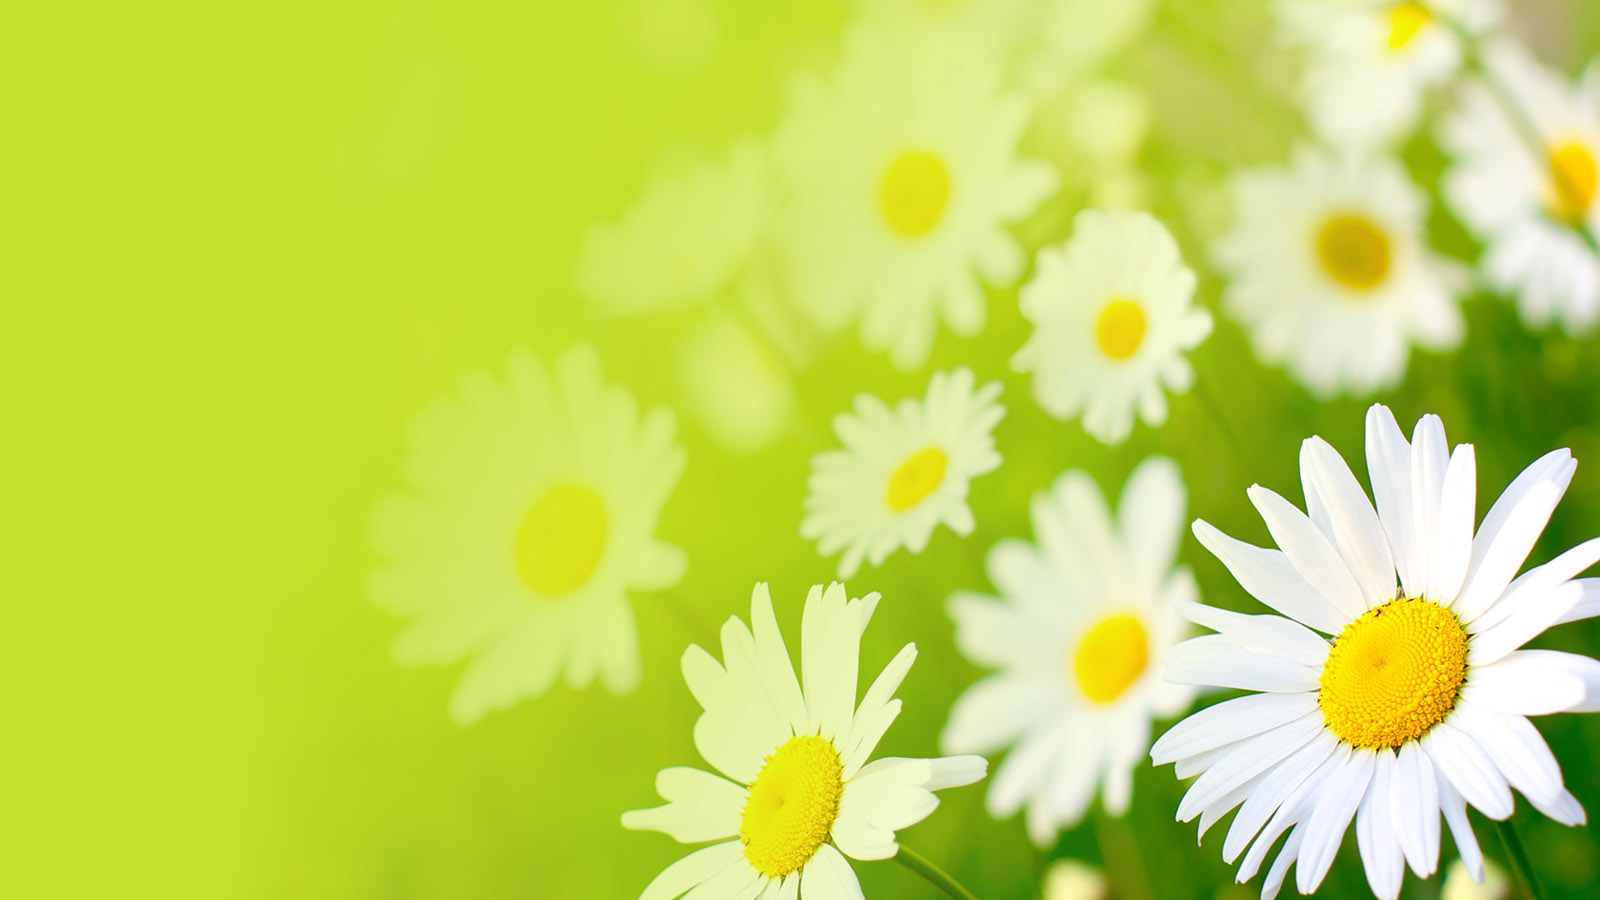 Sunflower desktop background picture